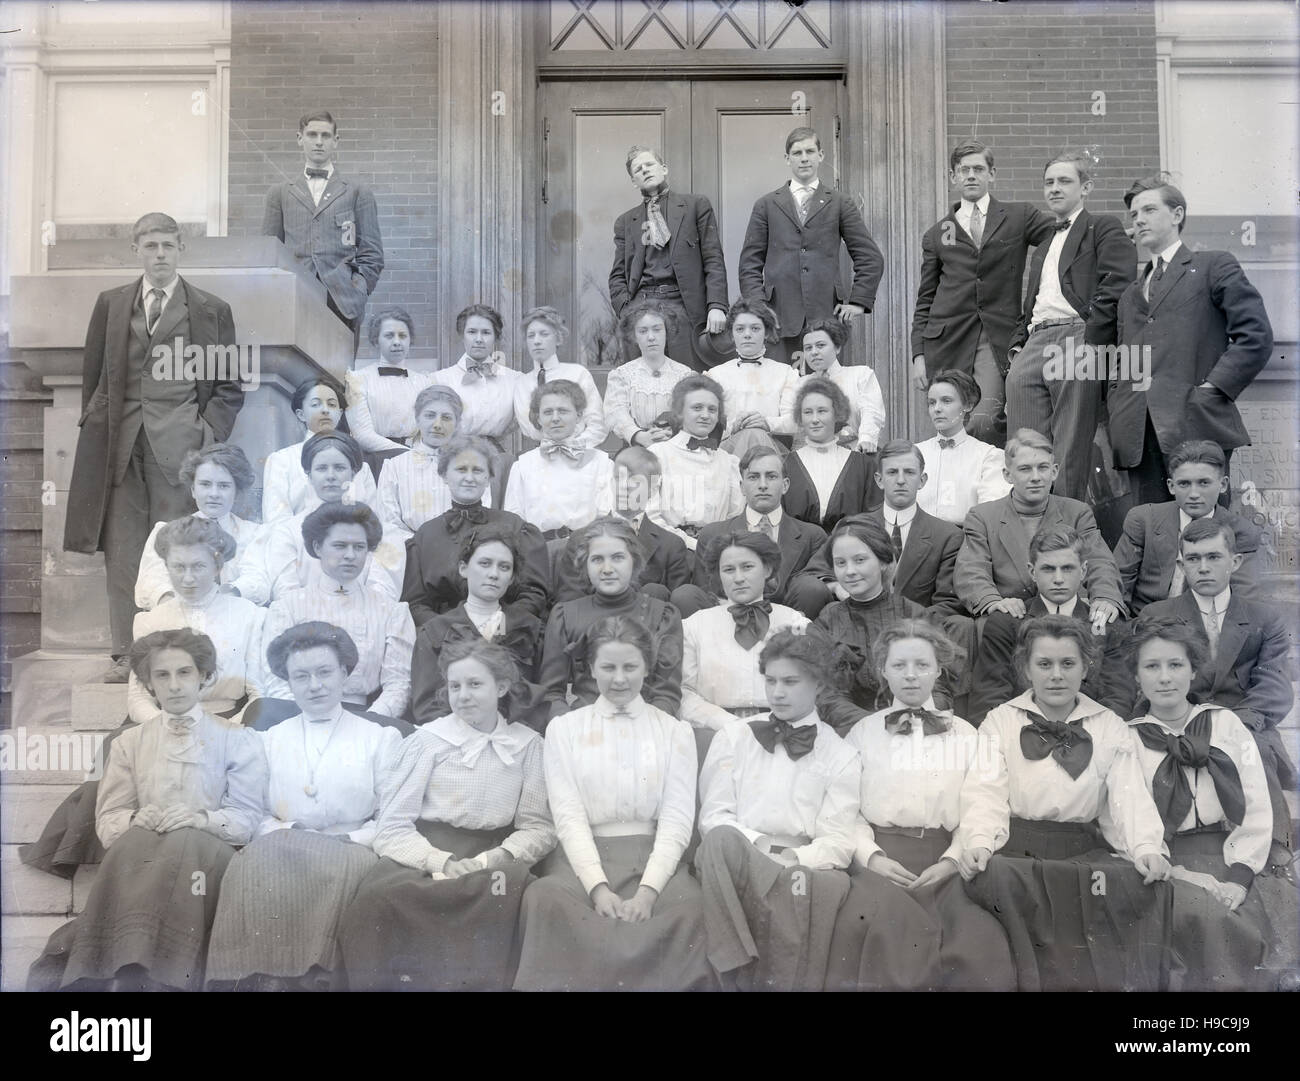 Antike 1900 Foto, Gruppe von College-Alter junge Männer und Frauen. Lage unbekannt, wahrscheinlich Midwest (Indiana und Ohio), USA. QUELLE: ORIGINAL FOTONEGATIV. Stockfoto